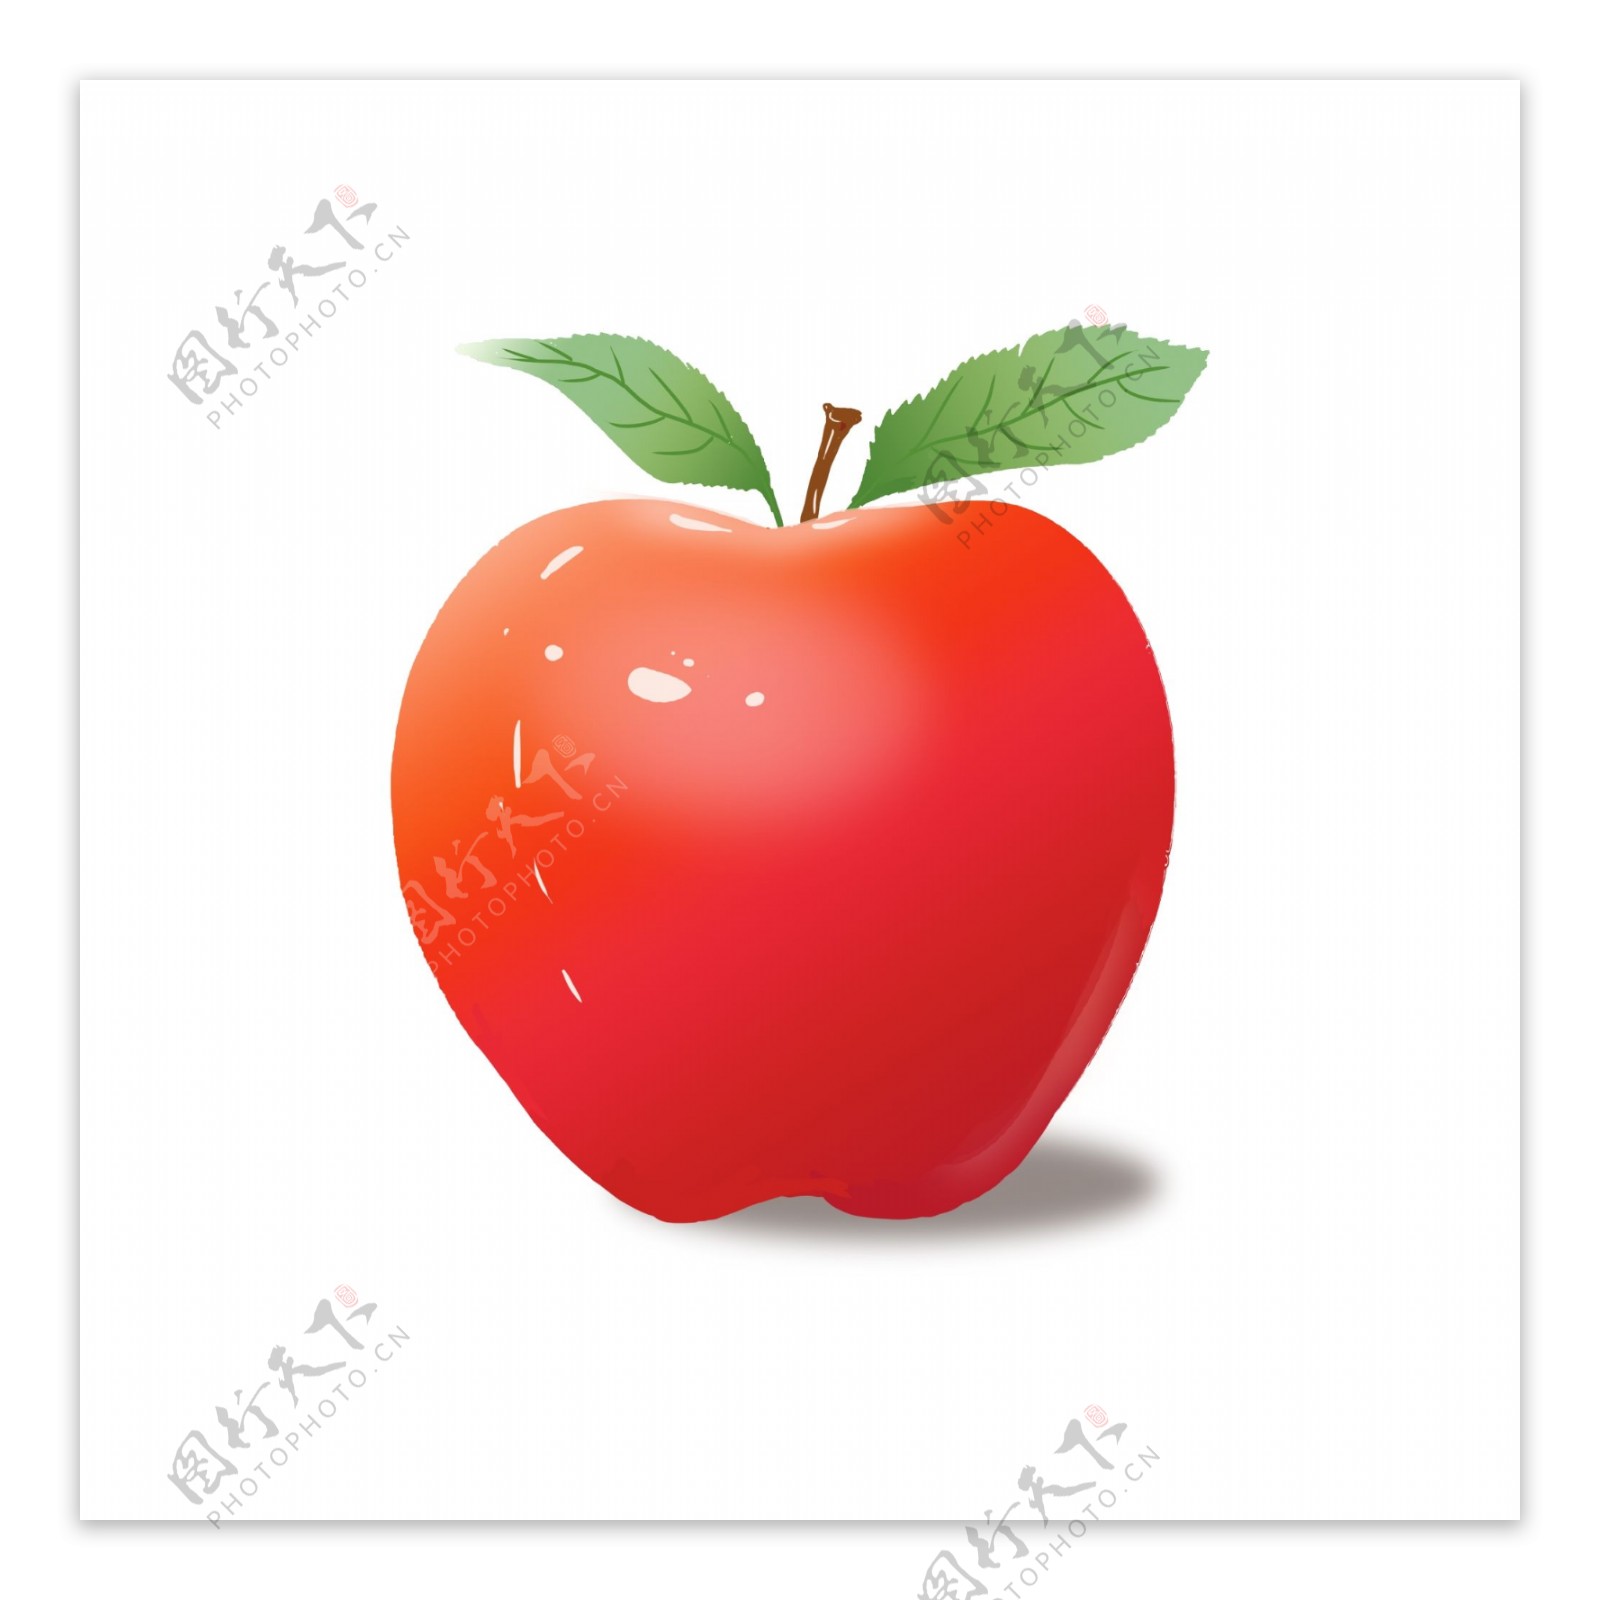 苹果红色苹果圣诞节苹果水果可商用元素